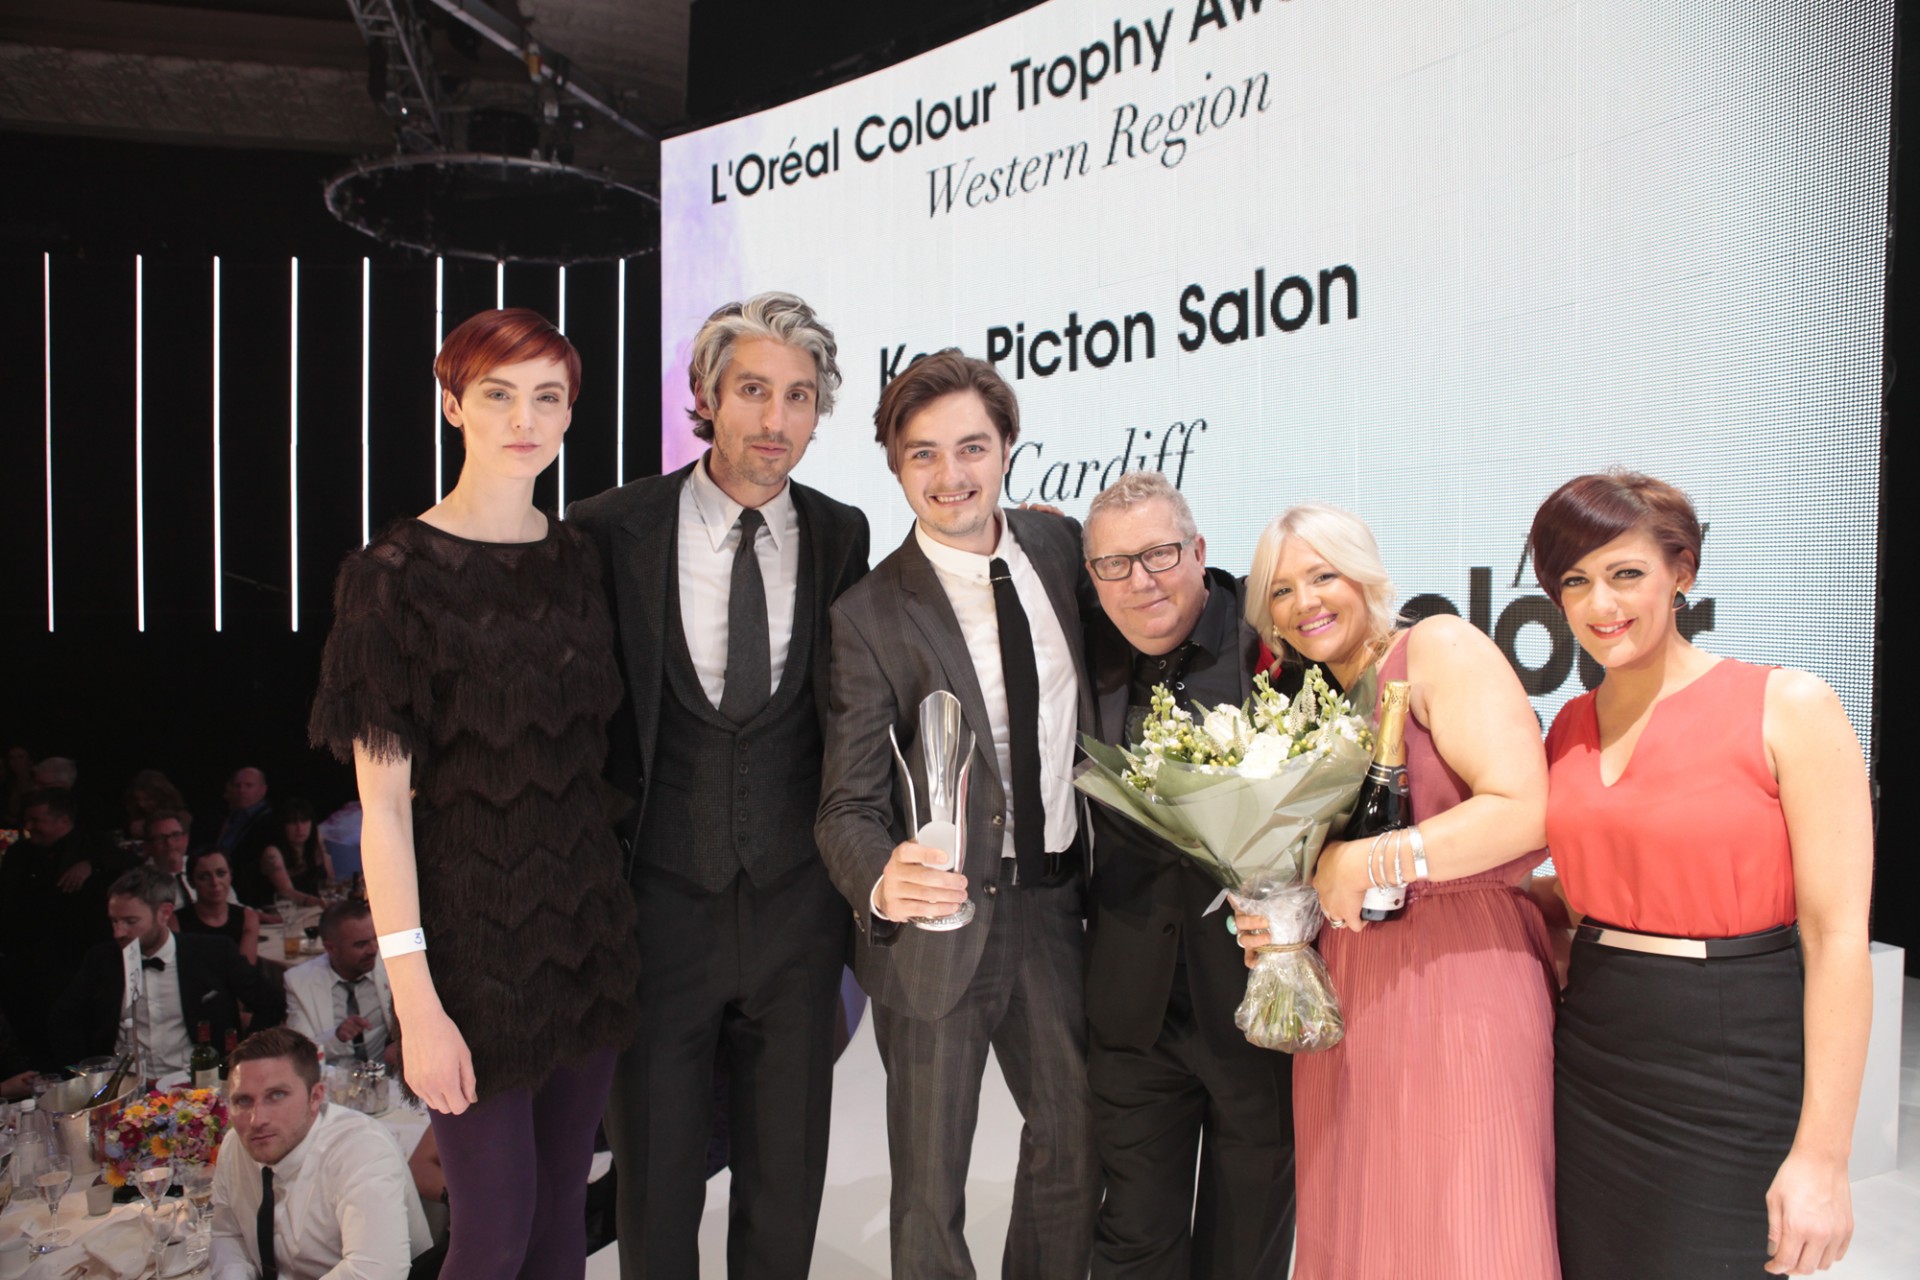 the Ken Picton Salon winning team